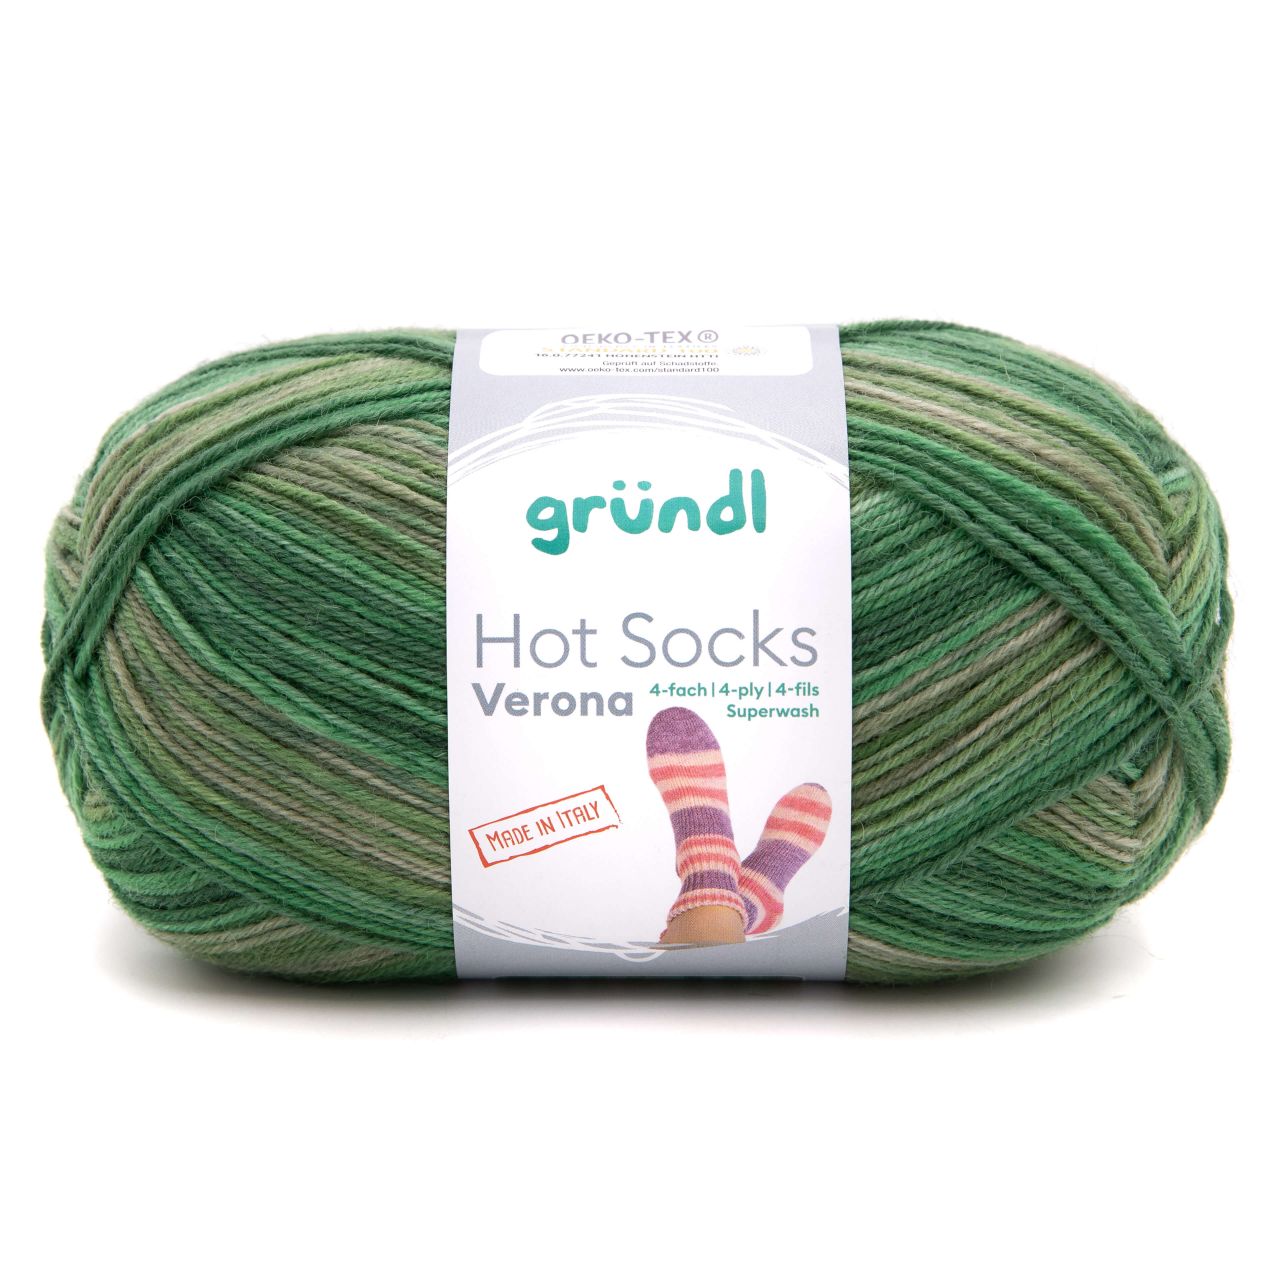 Gründl Sockenwolle Hot Socks Verona 100 g 4-fach grün-moos-meliert von gründl